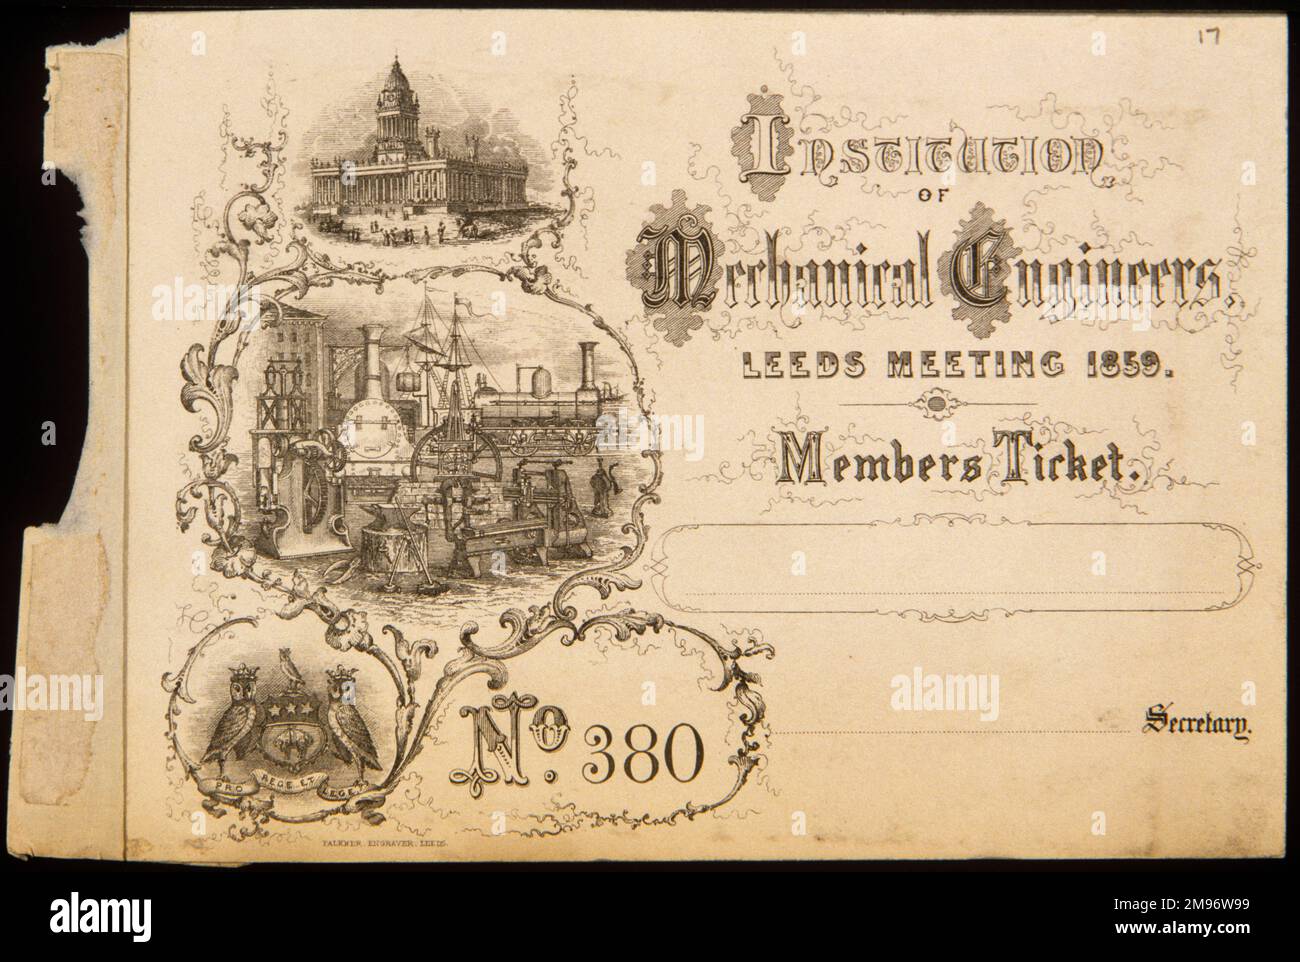 IMechE Leeds-Meeting. Mitgliederticket, 1859 Stockfoto